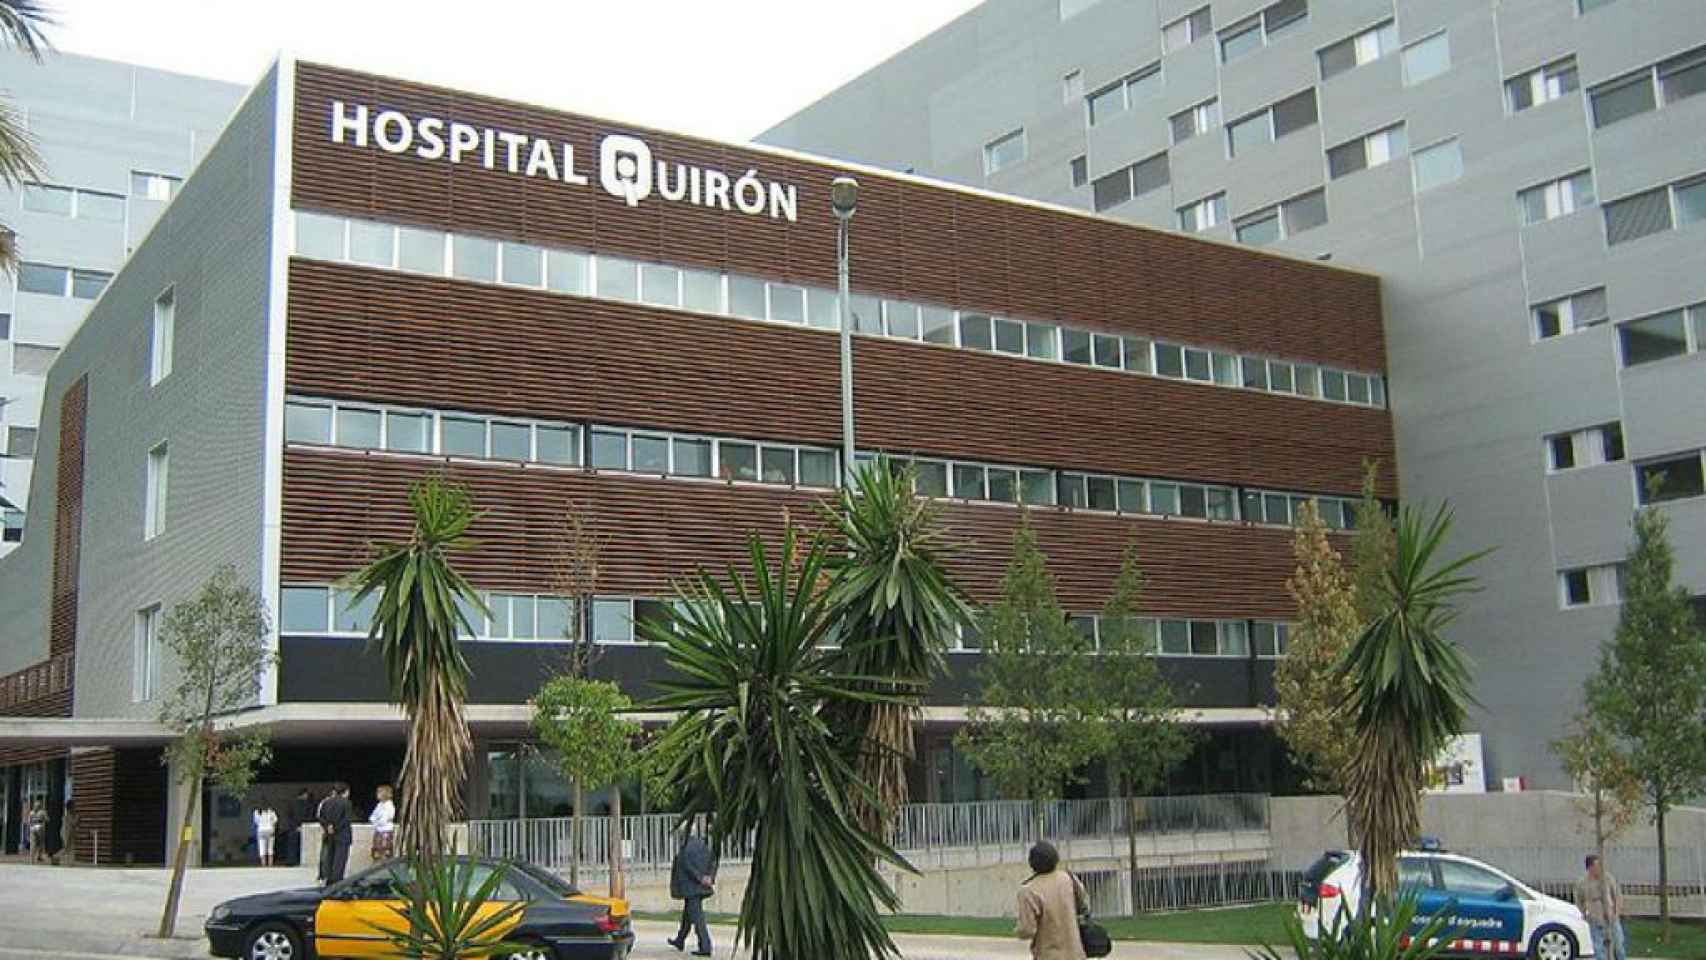 Edificio del hospital Quirón en Barcelona